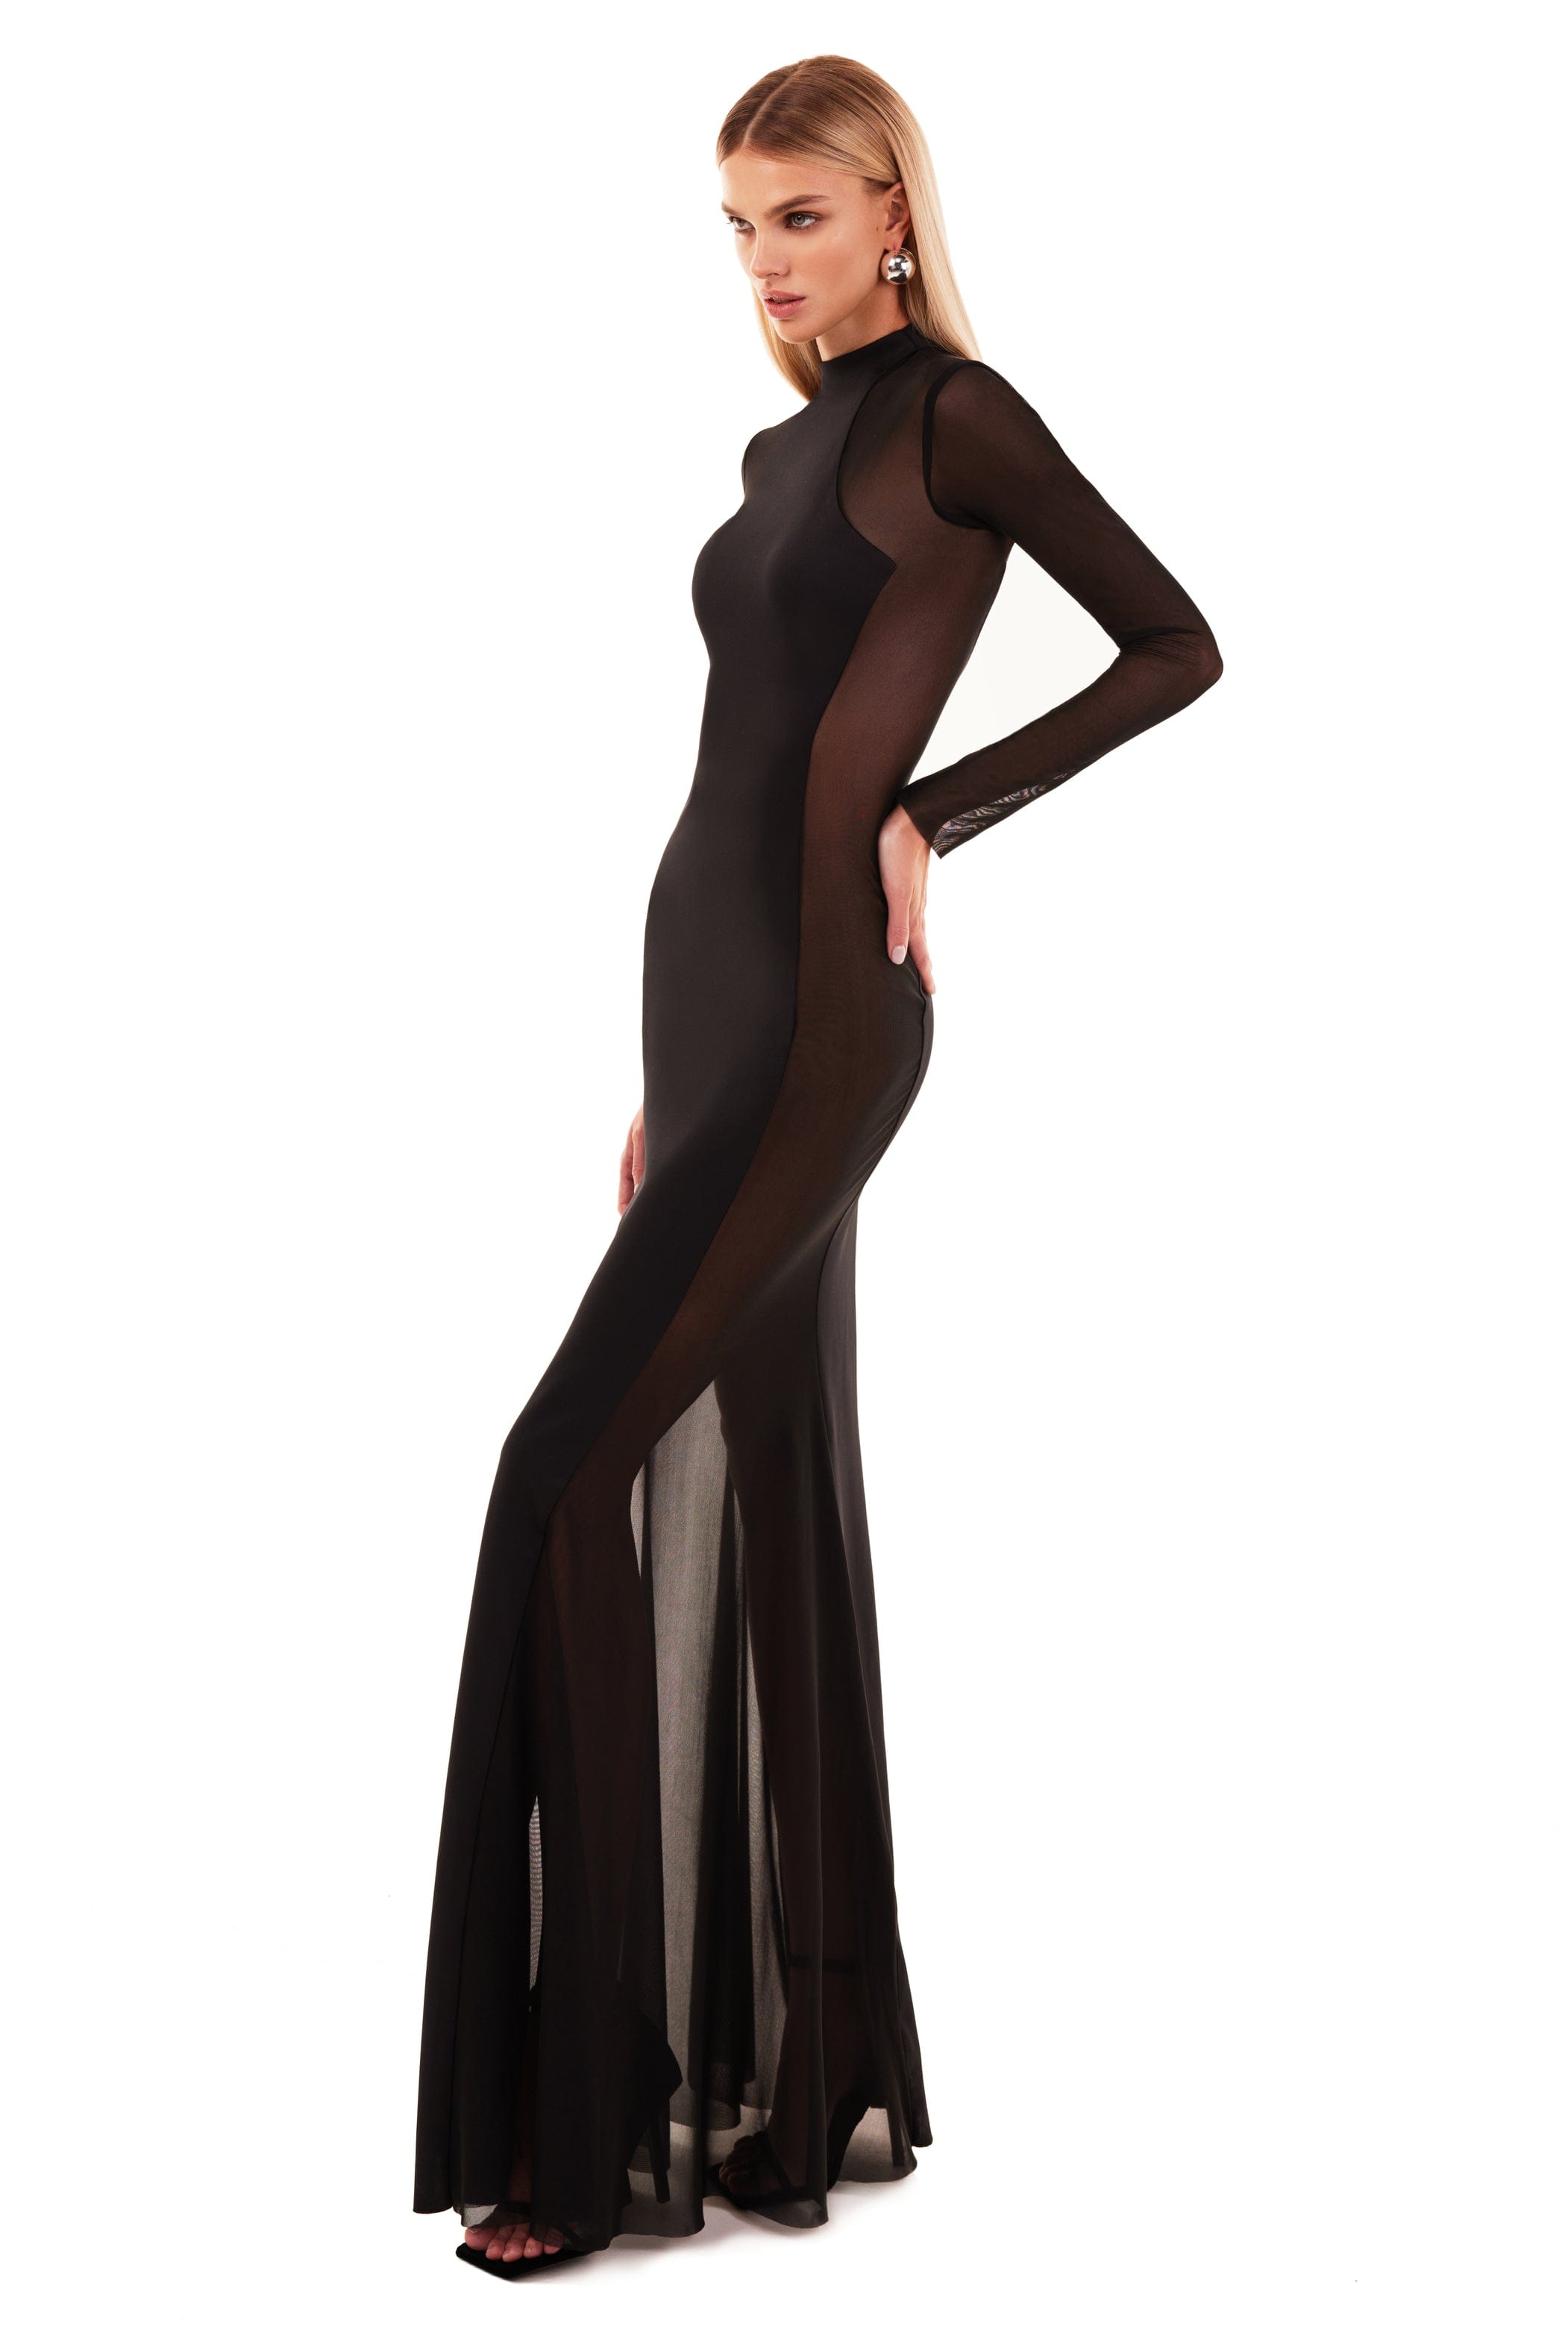 فستان باللون الأسود مع إضافات شبه شفافة